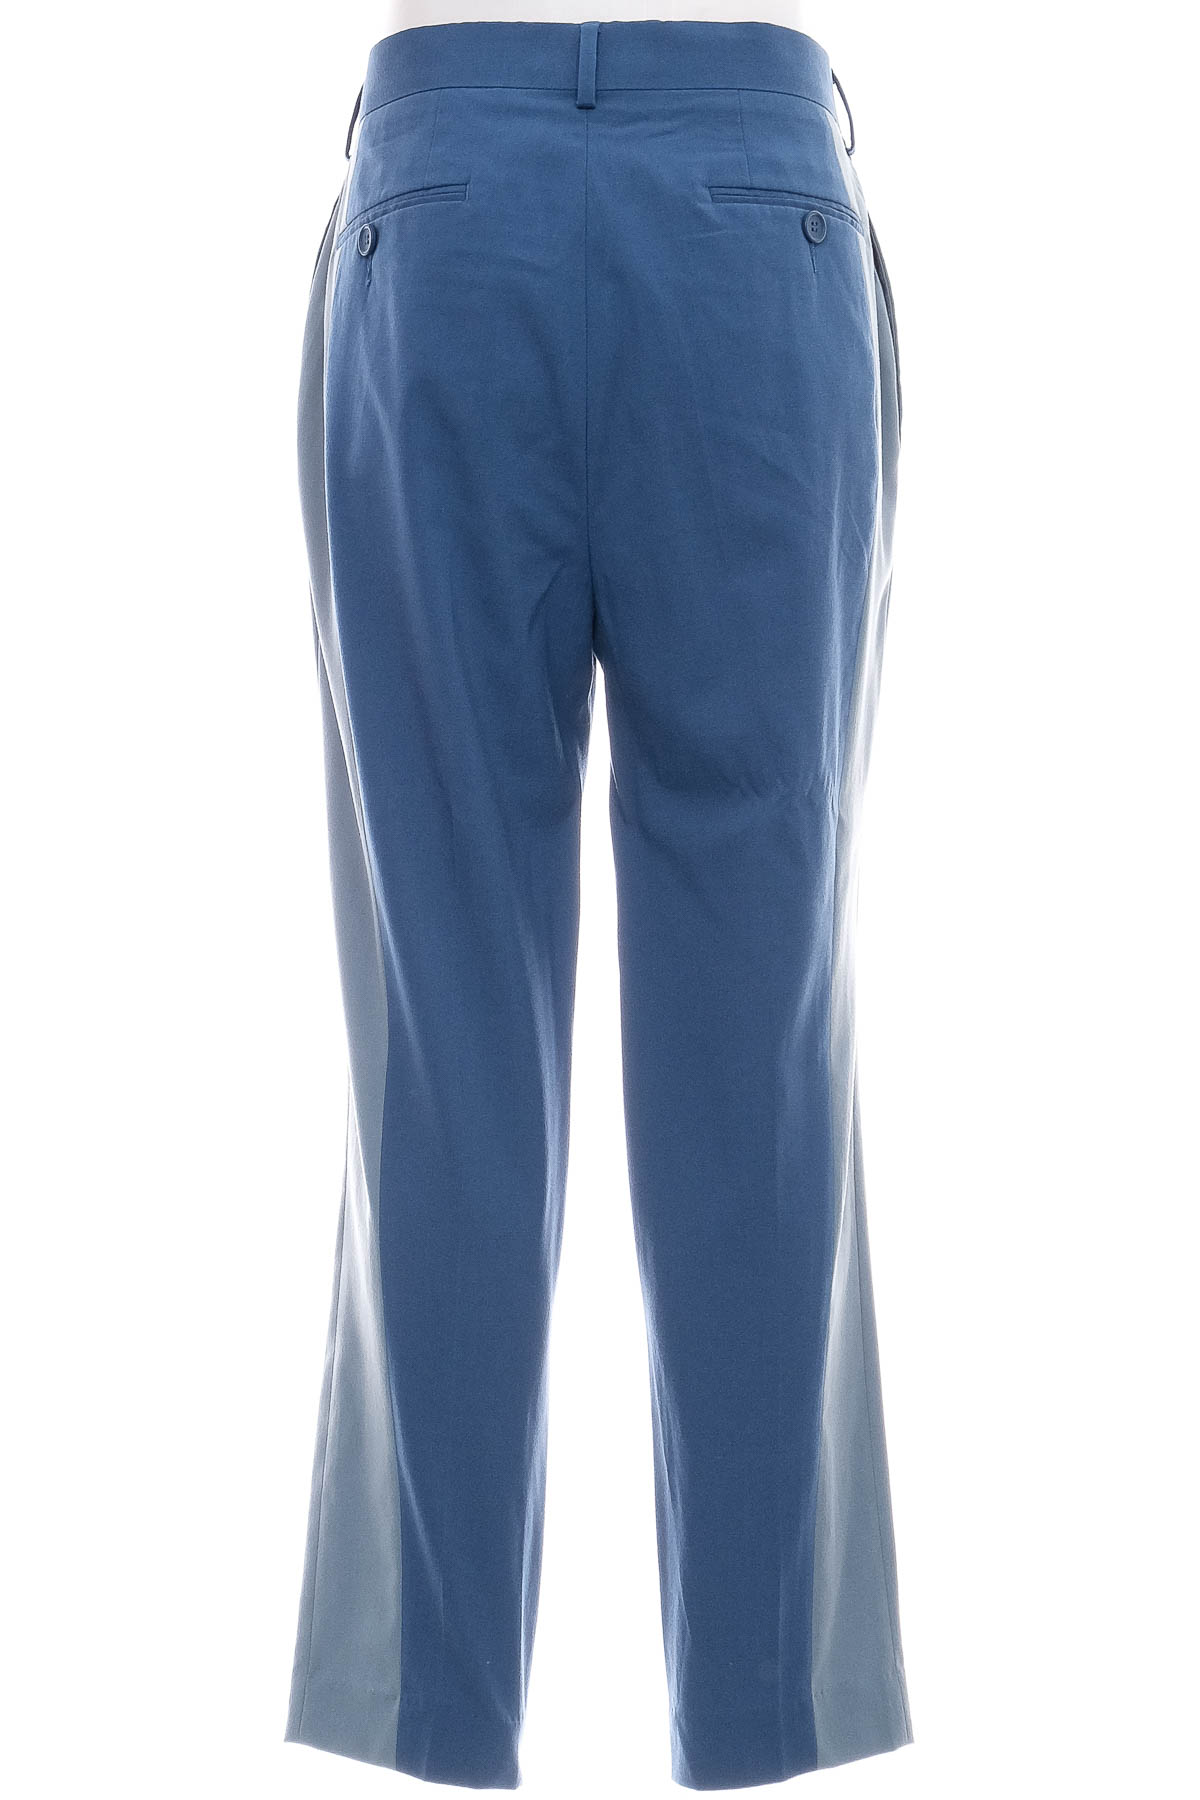 Men's trousers - Asos - 1